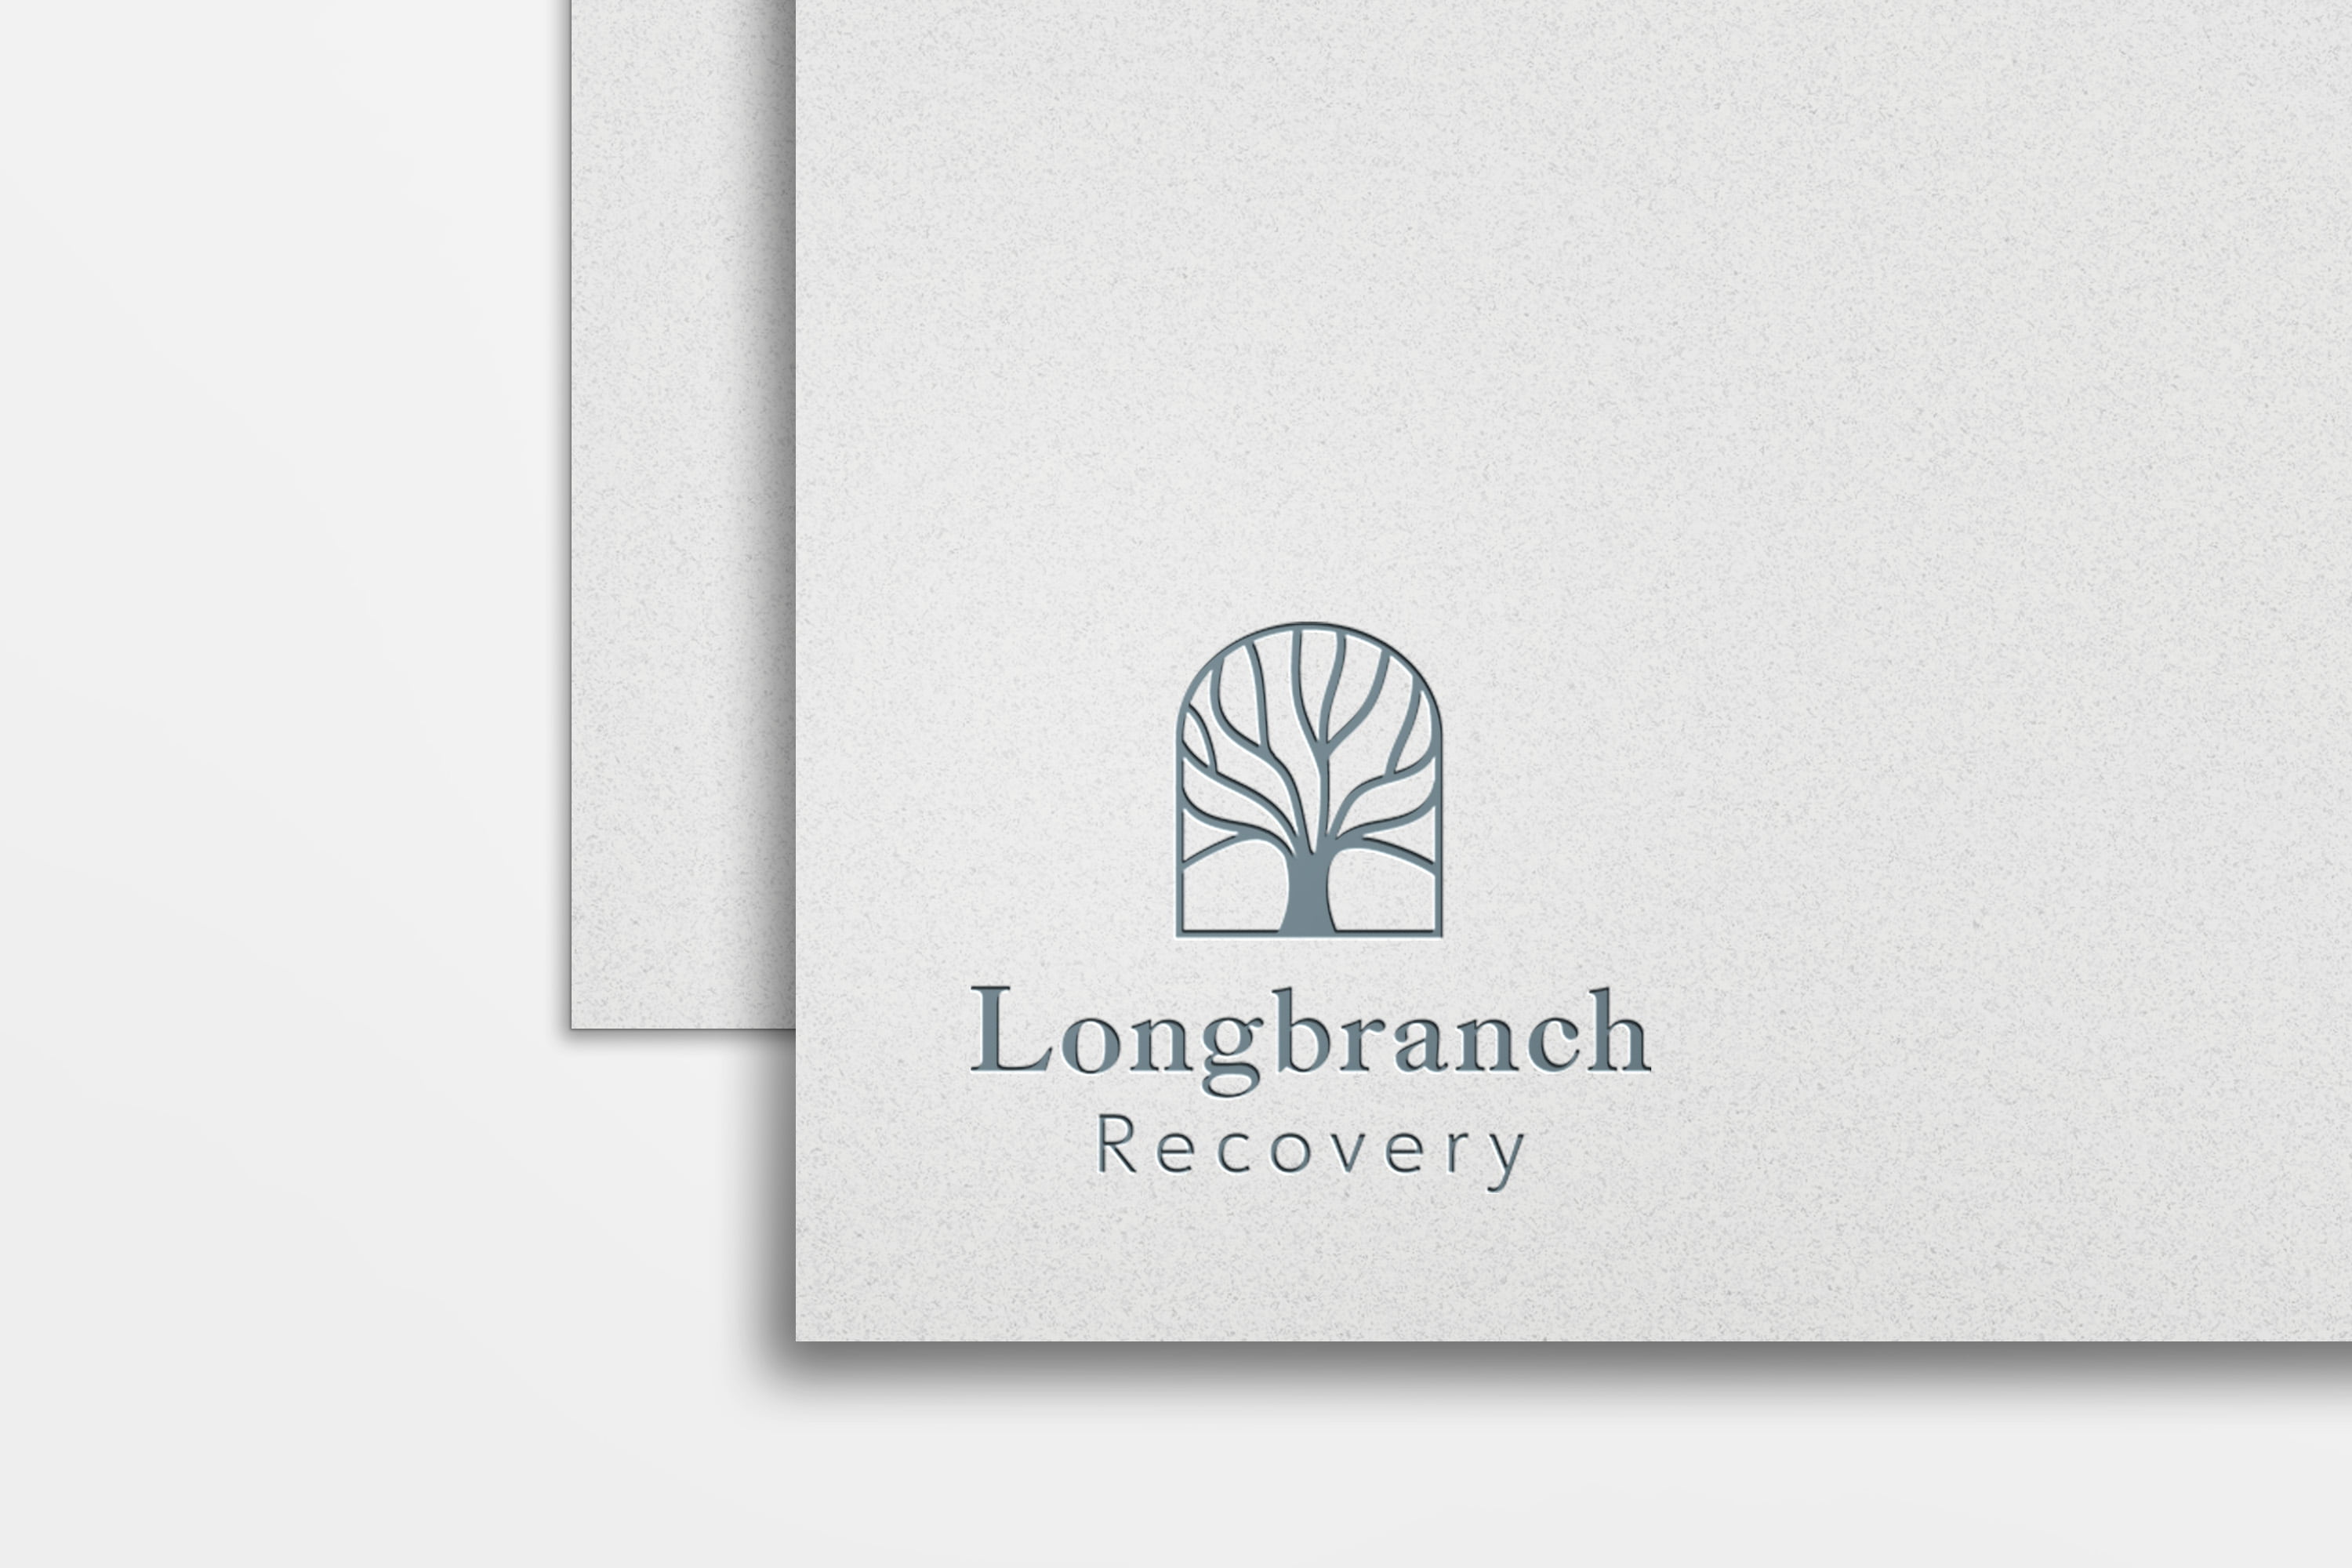 longbranch recovery agency rehab